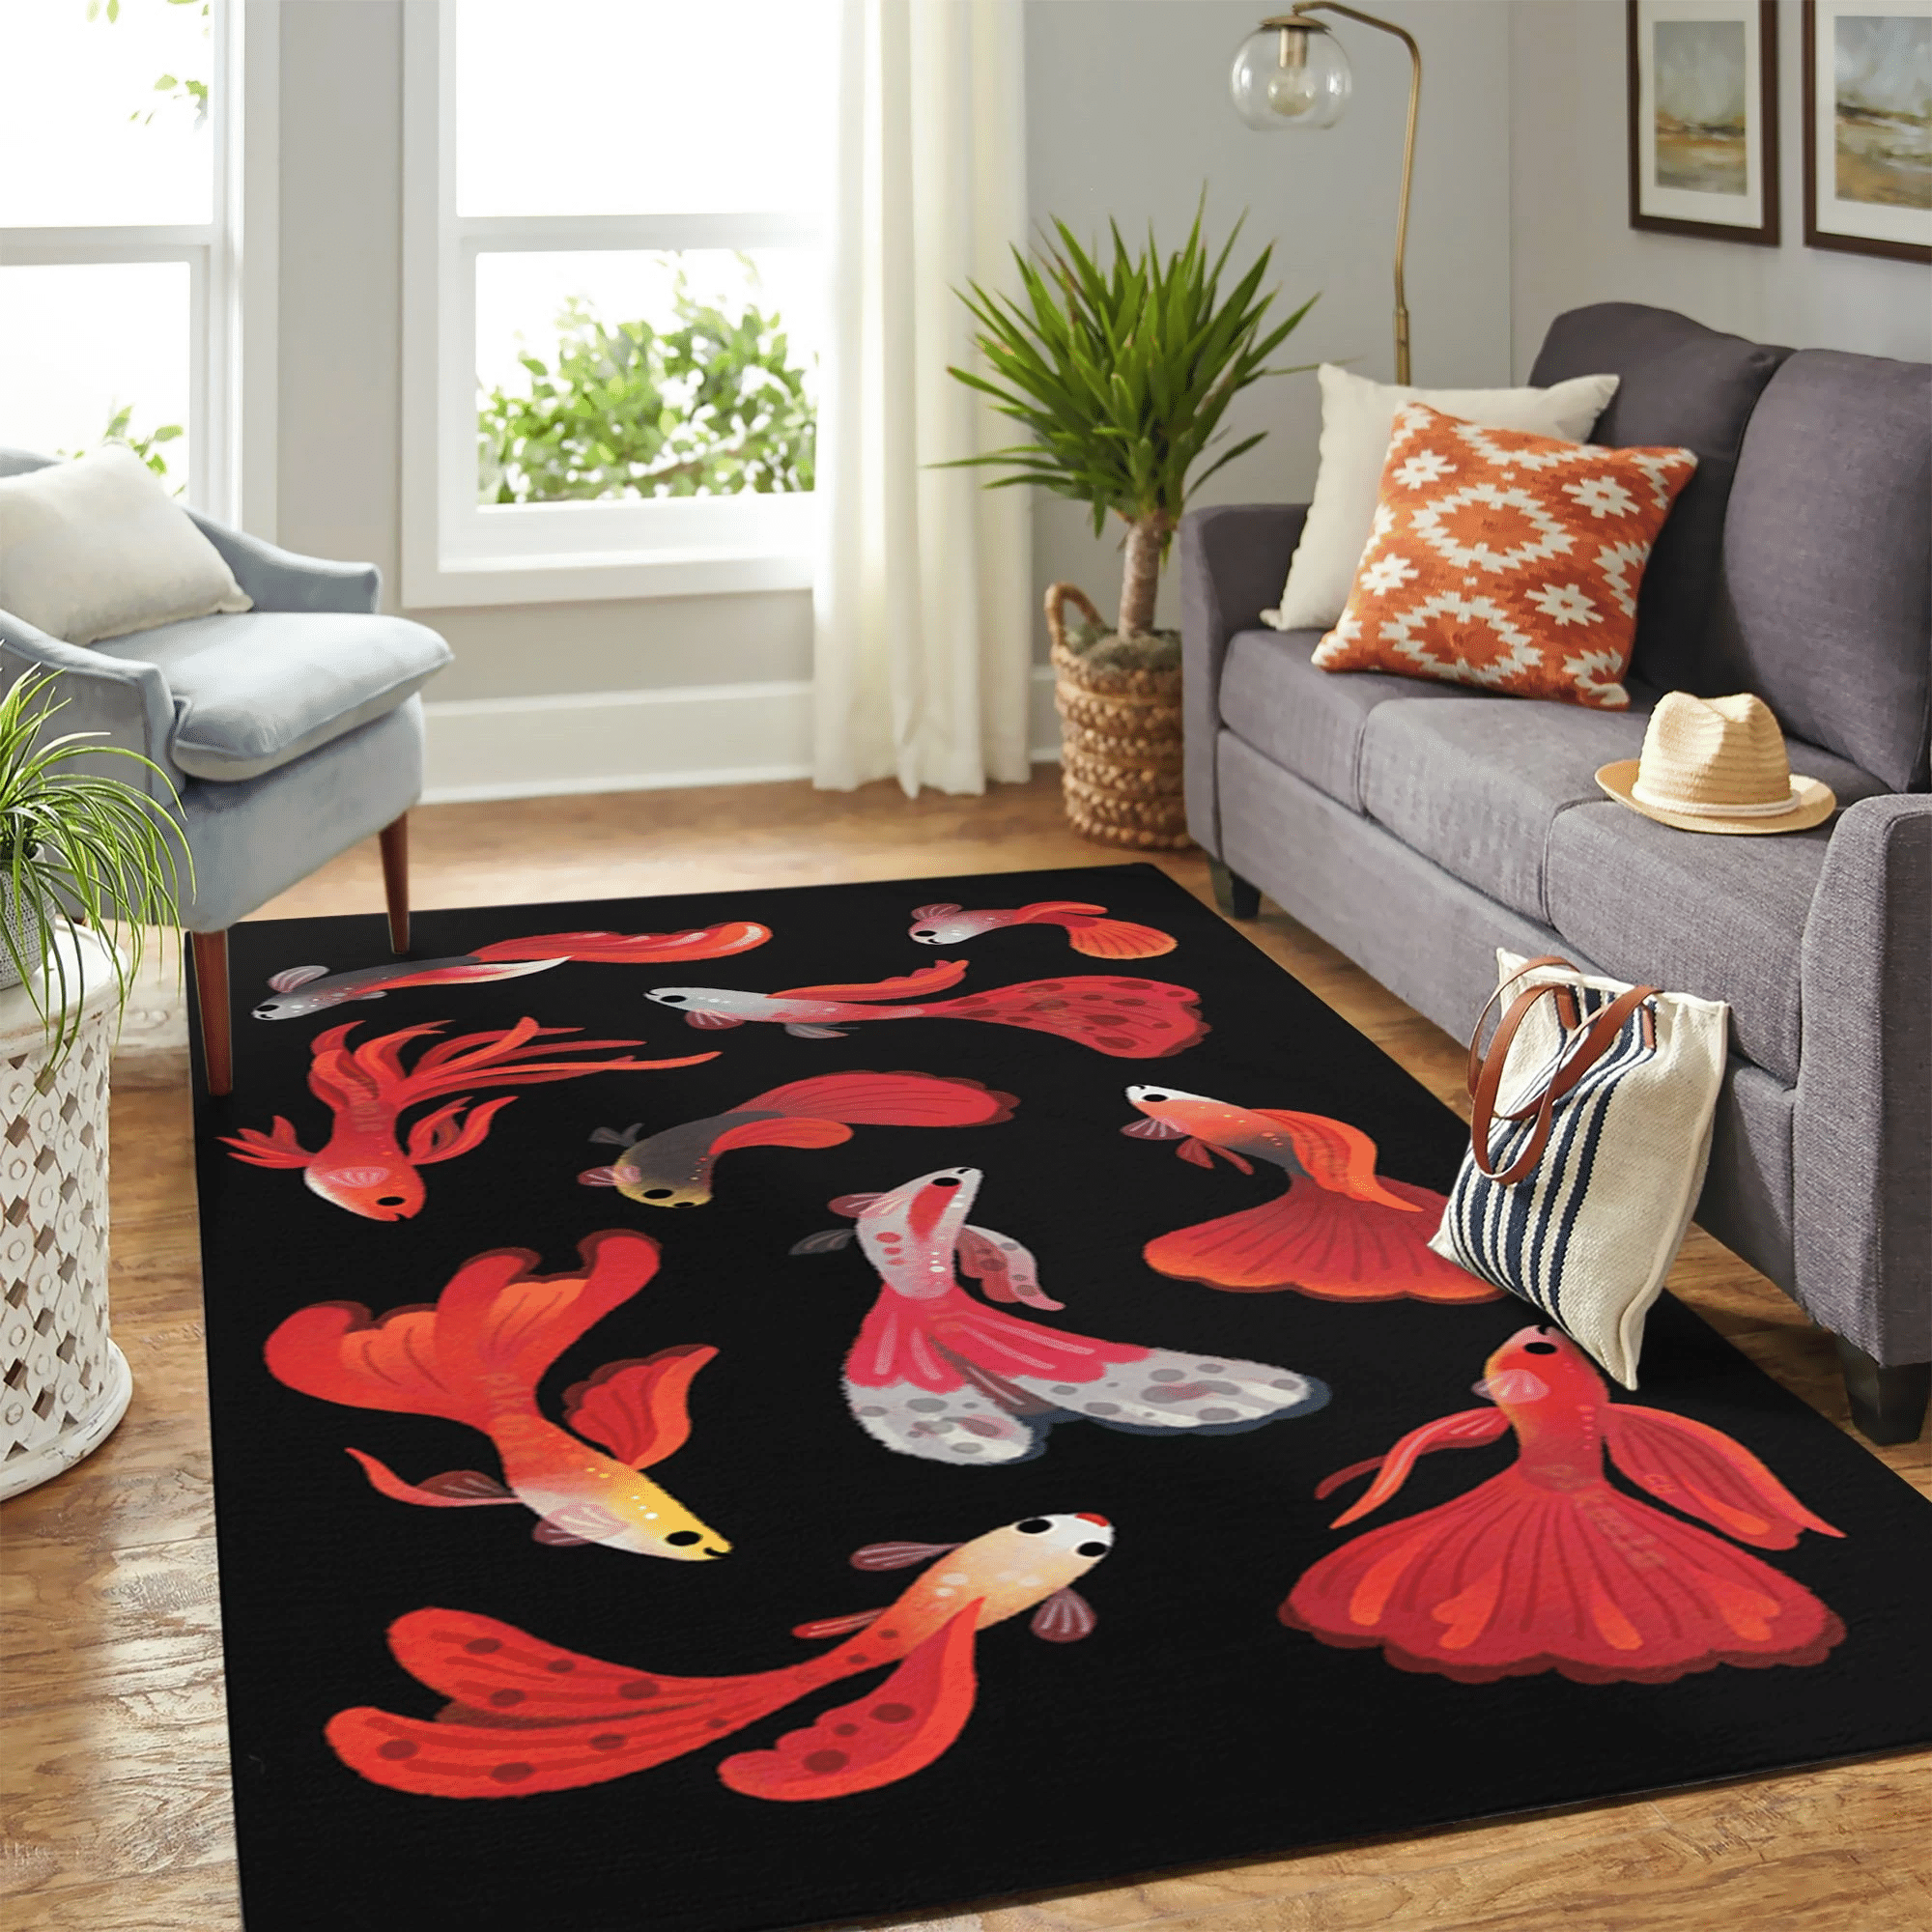 Red Fish New Carpet Floor Area Rug Chrismas Gift - Indoor Outdoor Rugs 1